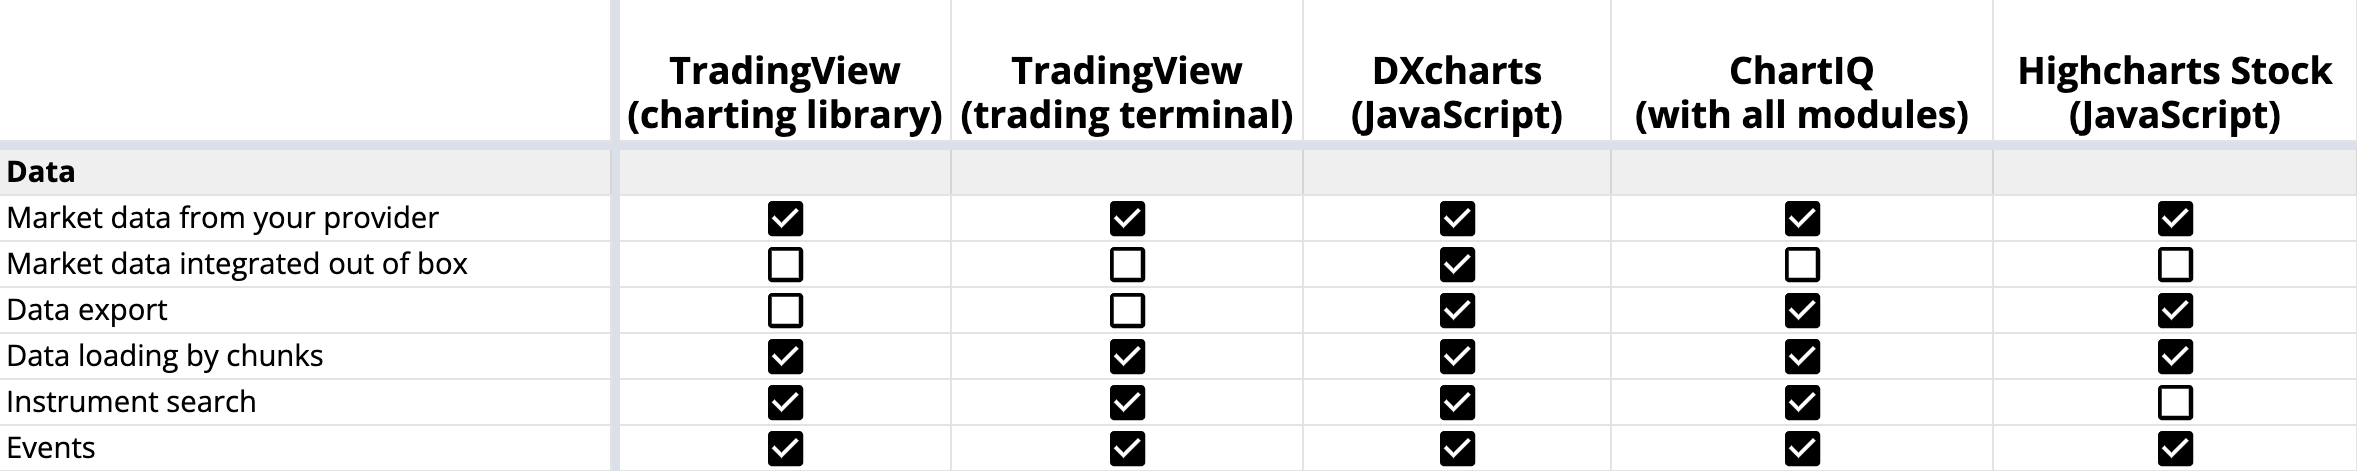 Рыночные данные готовы к использованию в TradingView, DXcharts, ChartIQ и Highcharts